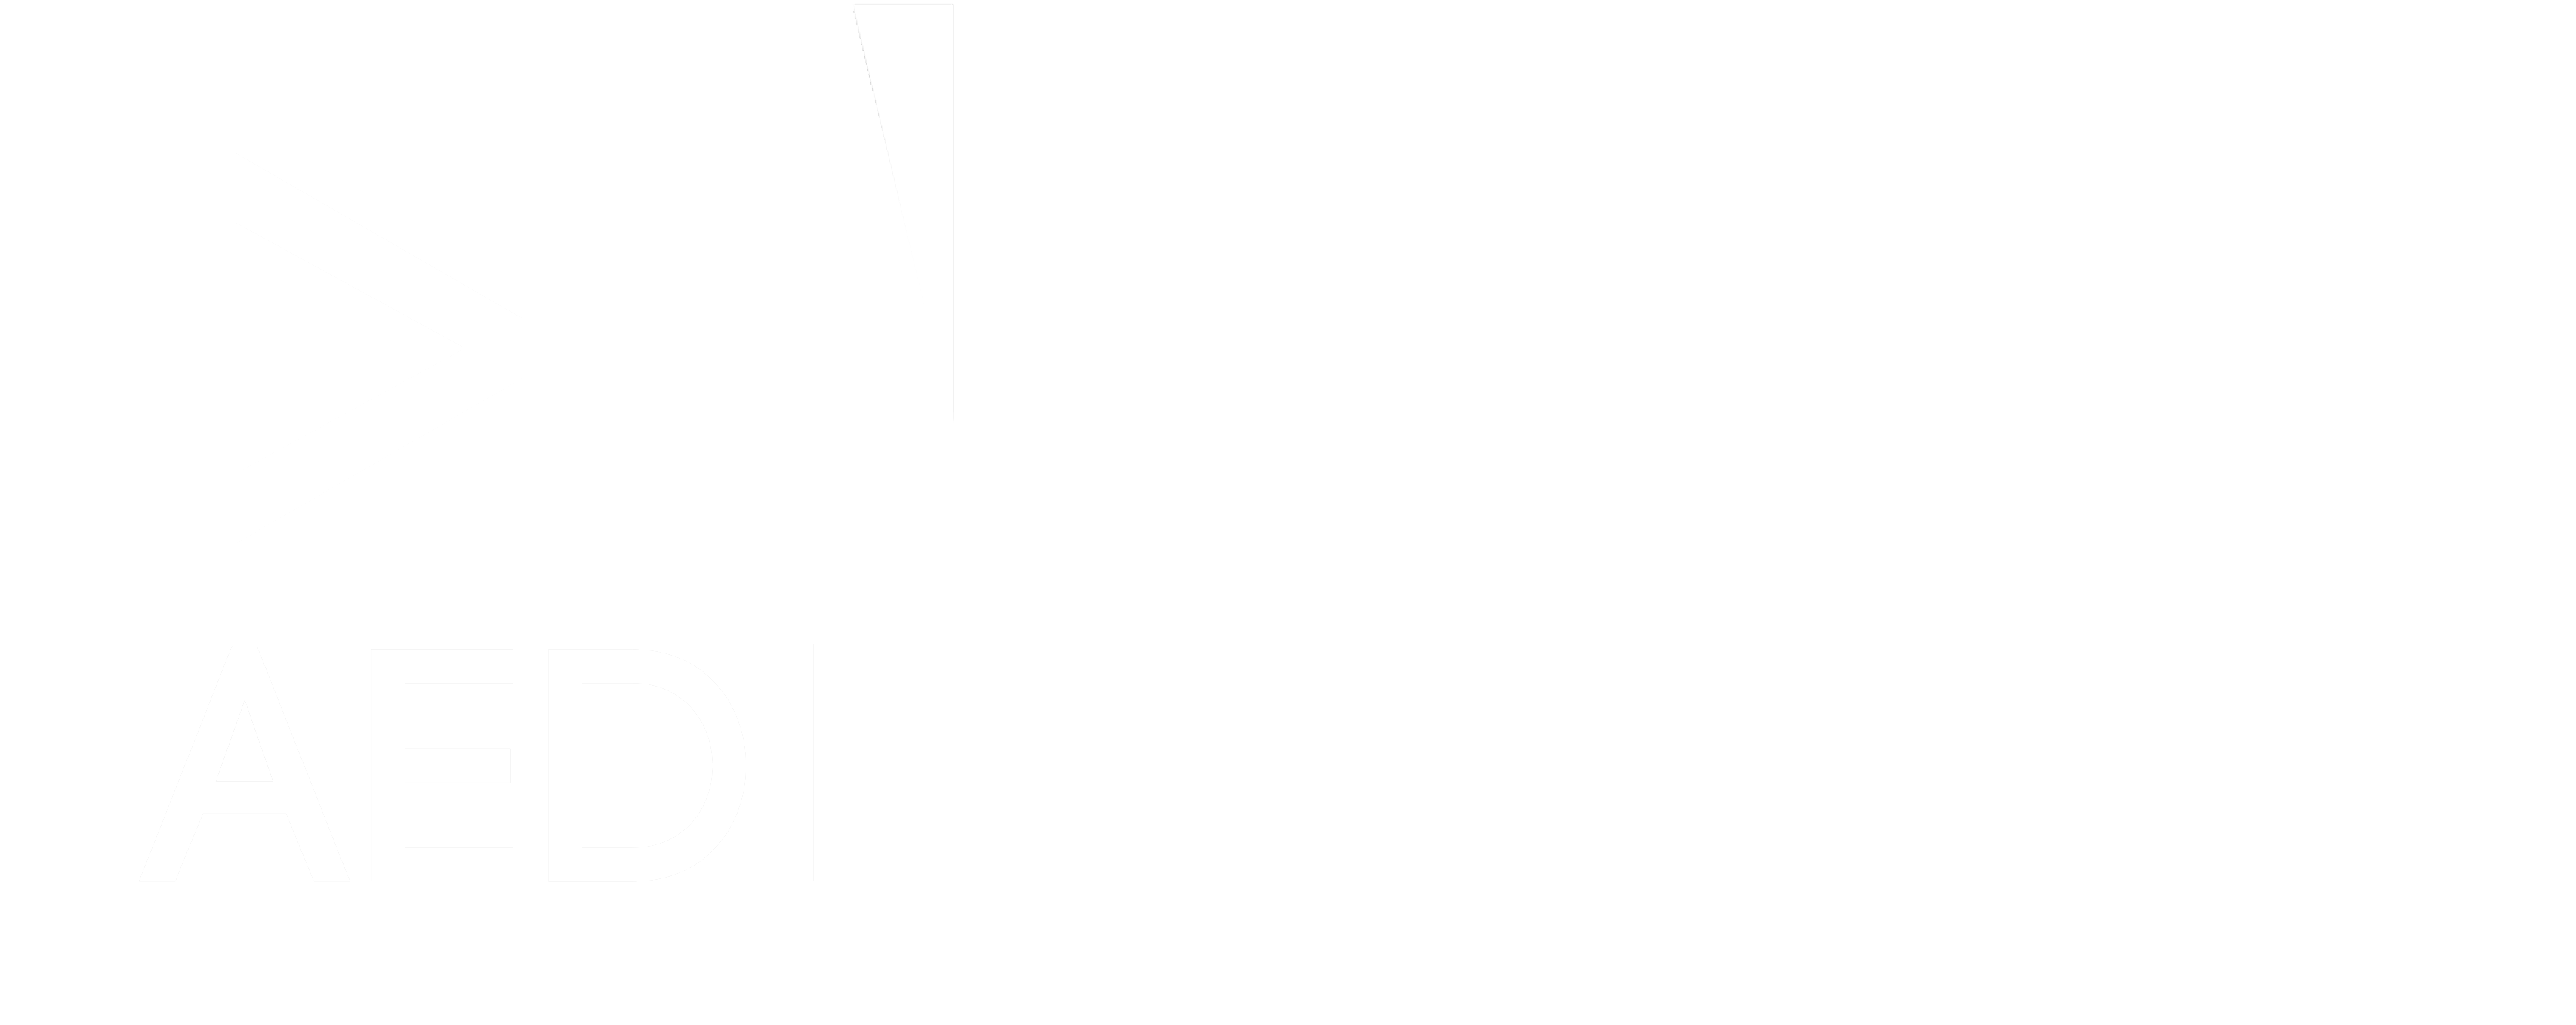 Logo AEDI